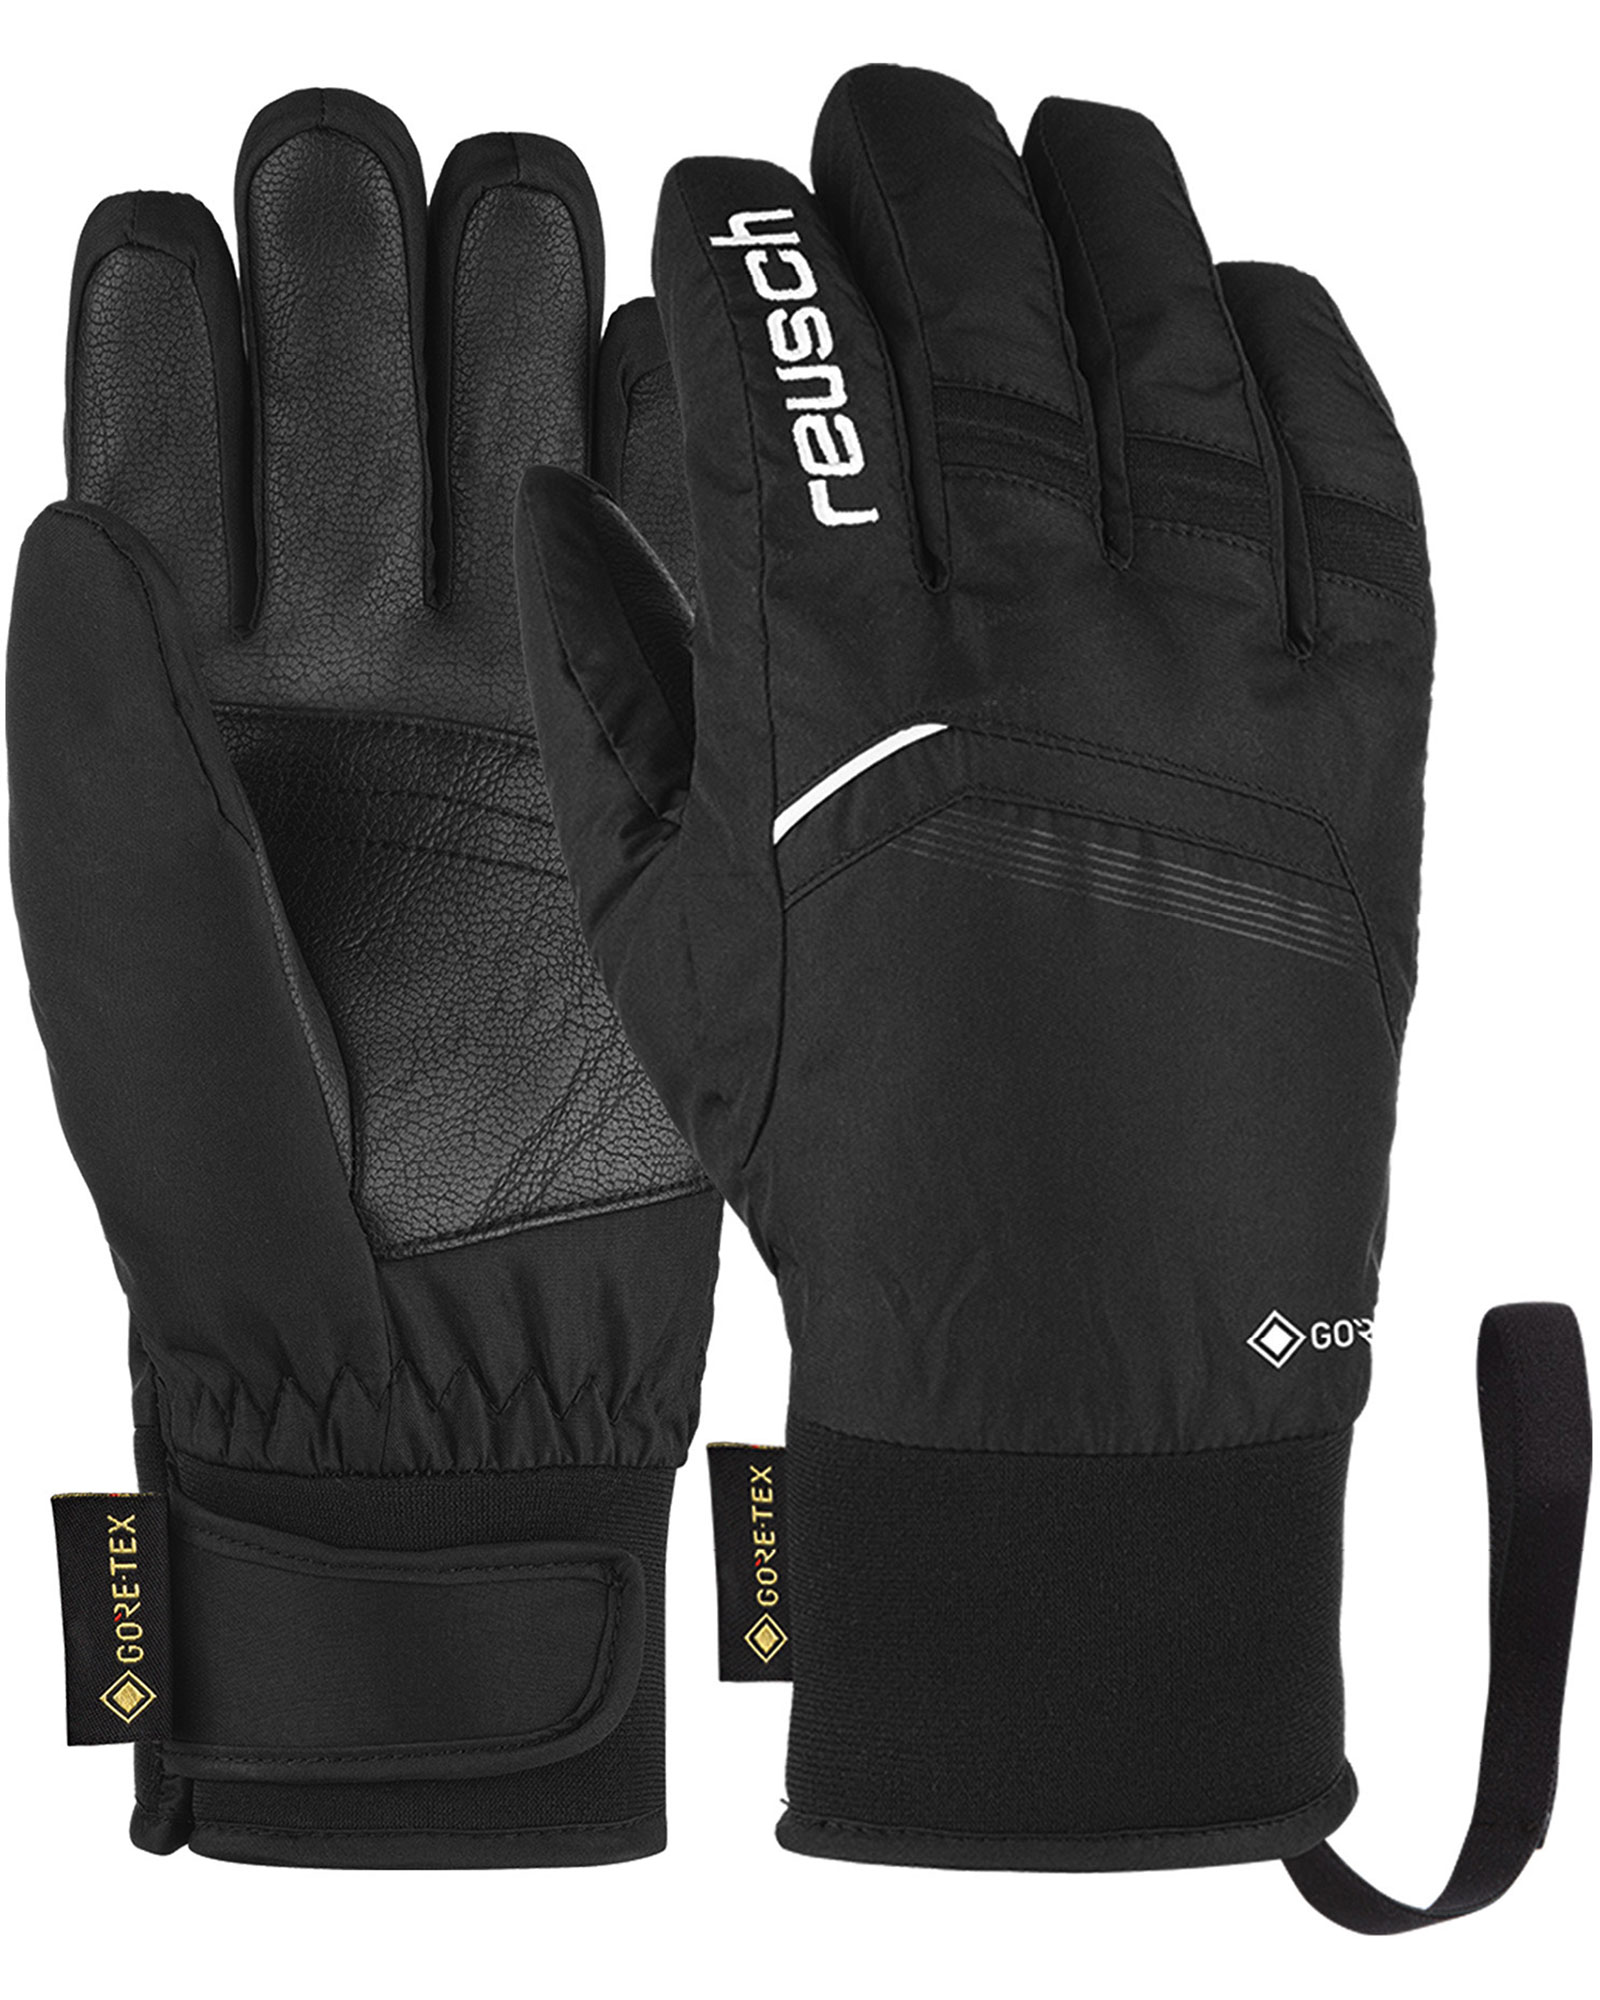 Reusch Bolt GORE TEX Kids’ Gloves - Black/white Size 6